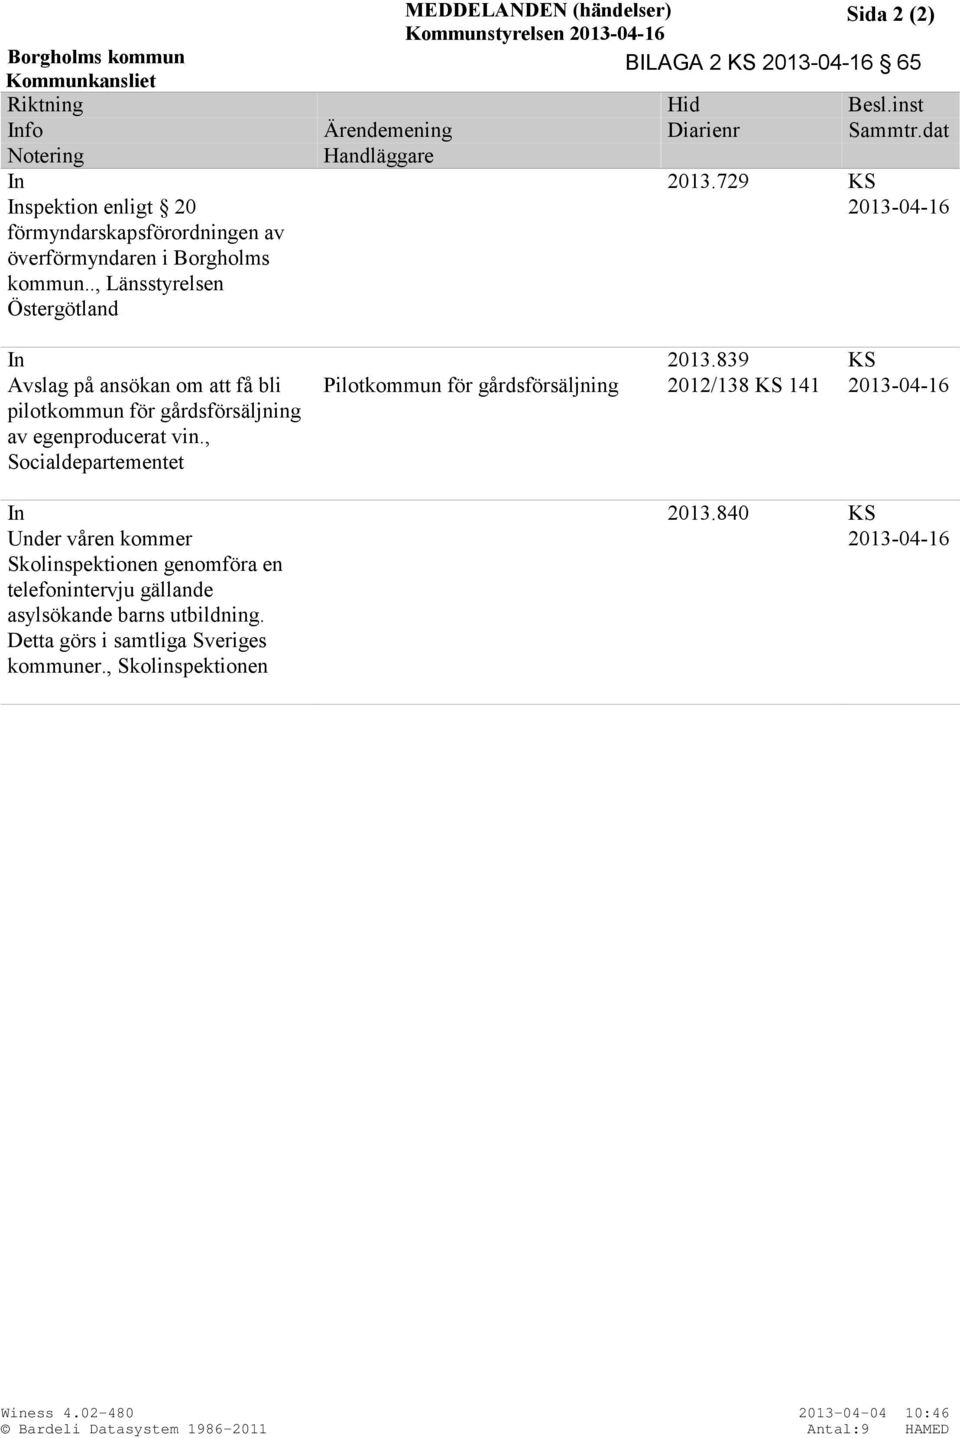 839 KS Avslag på ansökan om att få bli pilotkommun för gårdsförsäljning av egenproducerat vin., Socialdepartementet Pilotkommun för gårdsförsäljning 2012/138 KS 141 2013-04-16 In 2013.